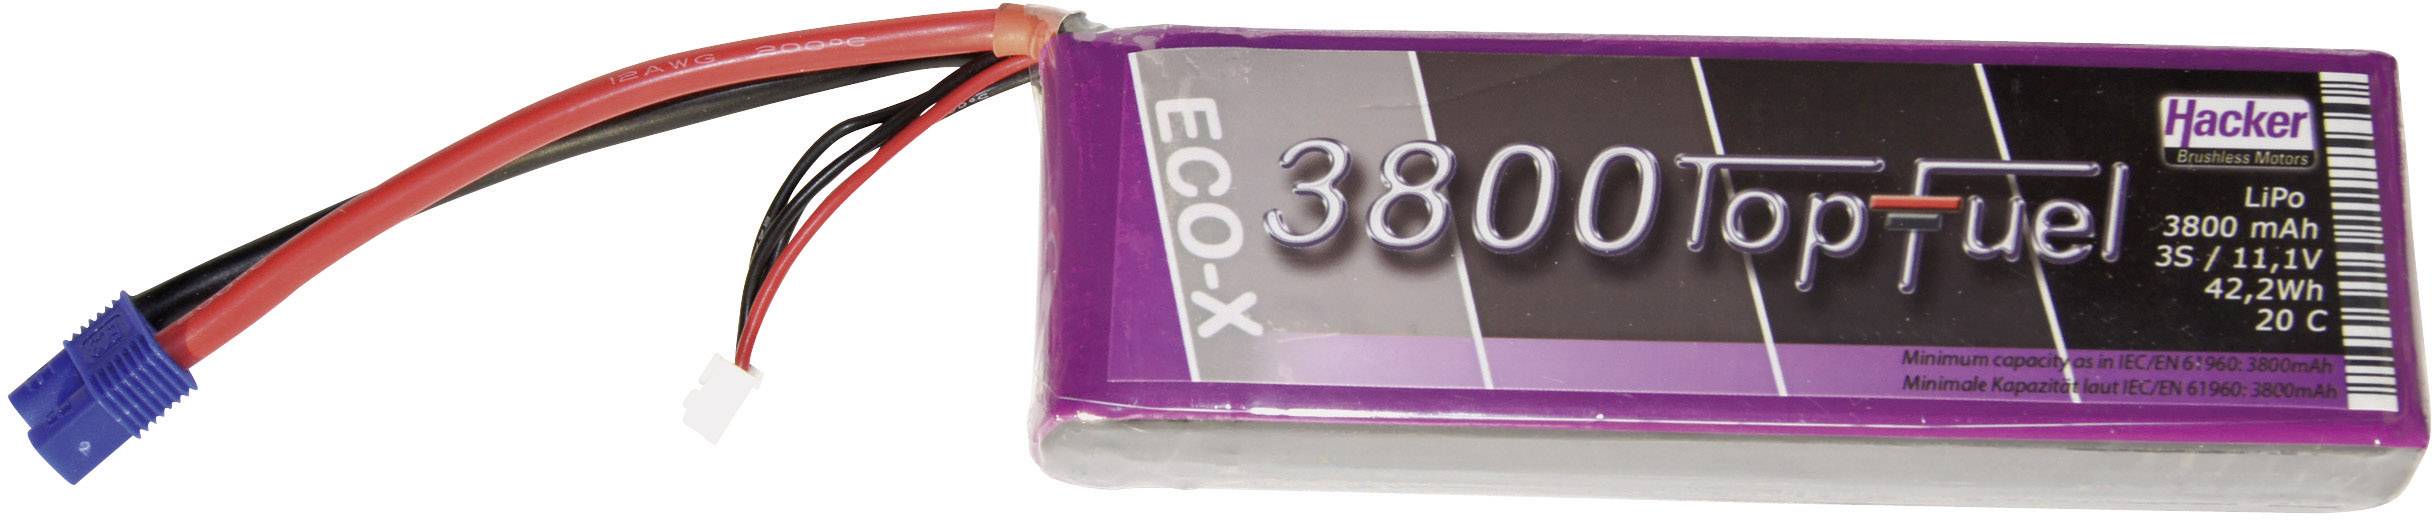 3 20 C Softcase XT90 93800331 Hacker Batteria ricaricabile LiPo 11.1 V 3800 mAh Numero di celle